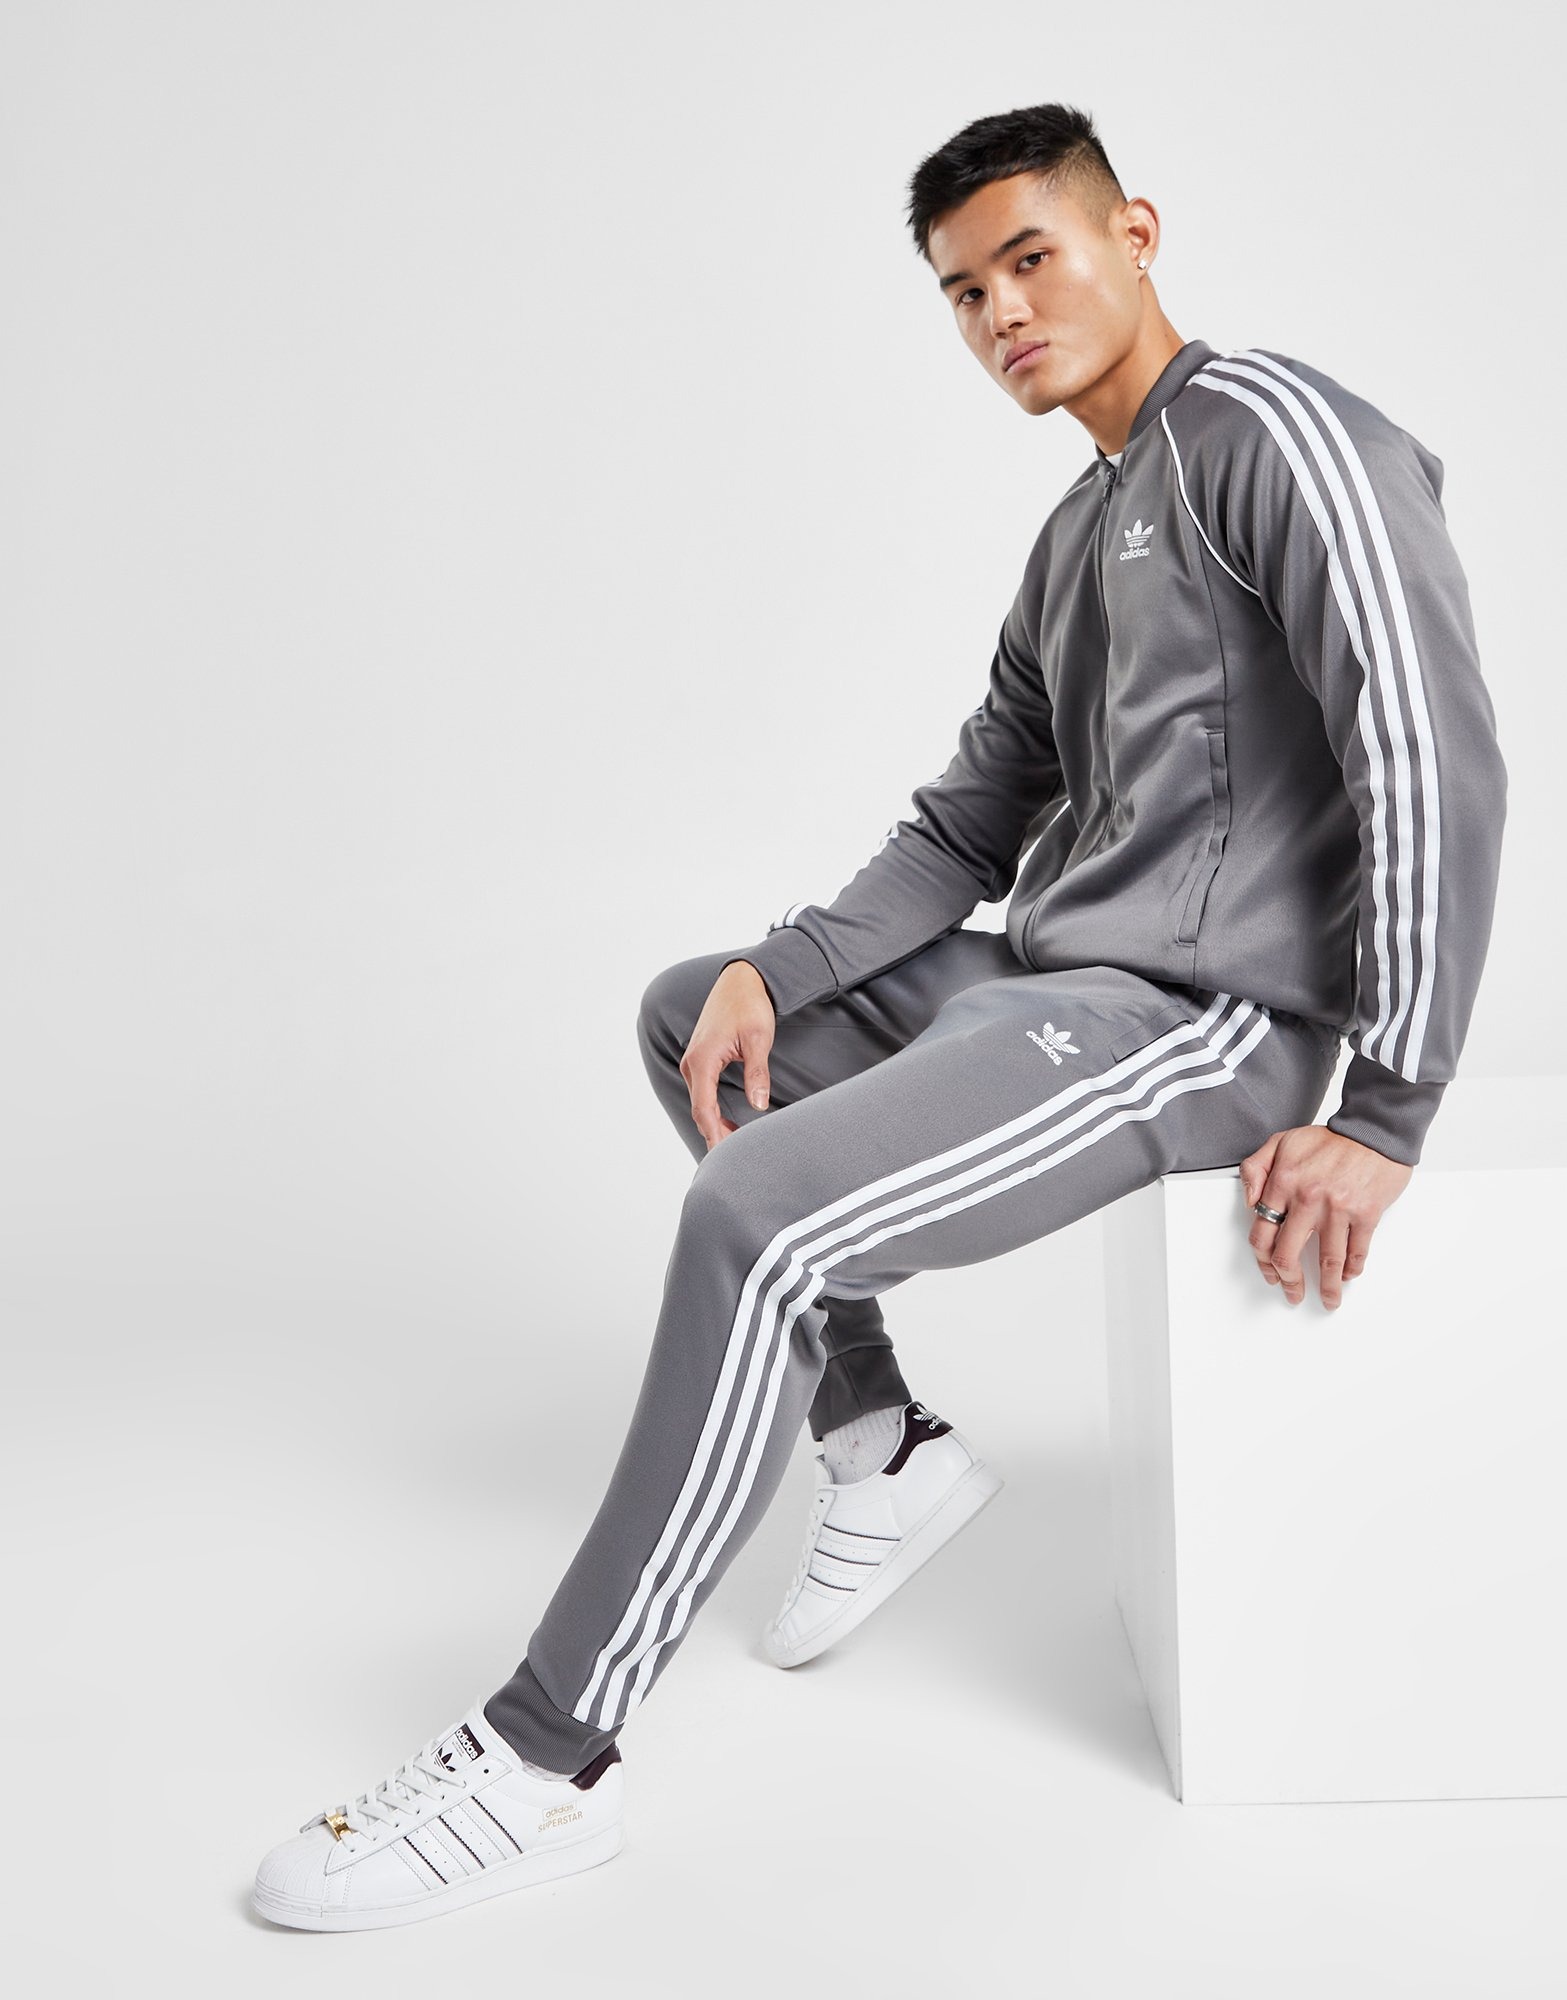 Aap Binnenwaarts Ga naar beneden Grijs adidas Originals SST Track Pants - JD Sports Nederland